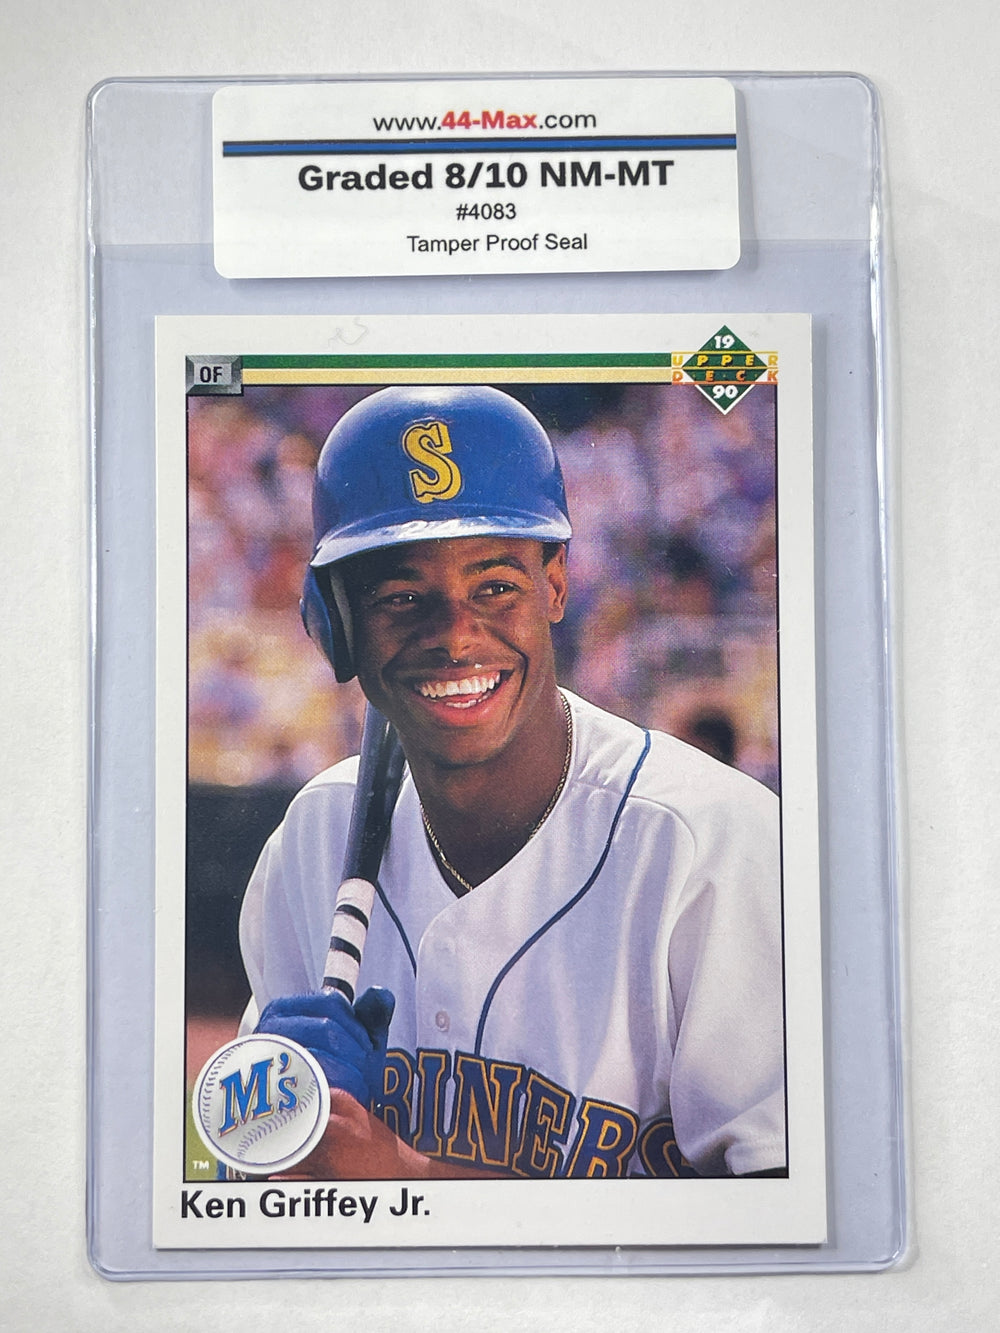 Ken Griffey Jr 1990 Upper Deck Baseball Card. 44-Max 8/10 NM-MT #4083